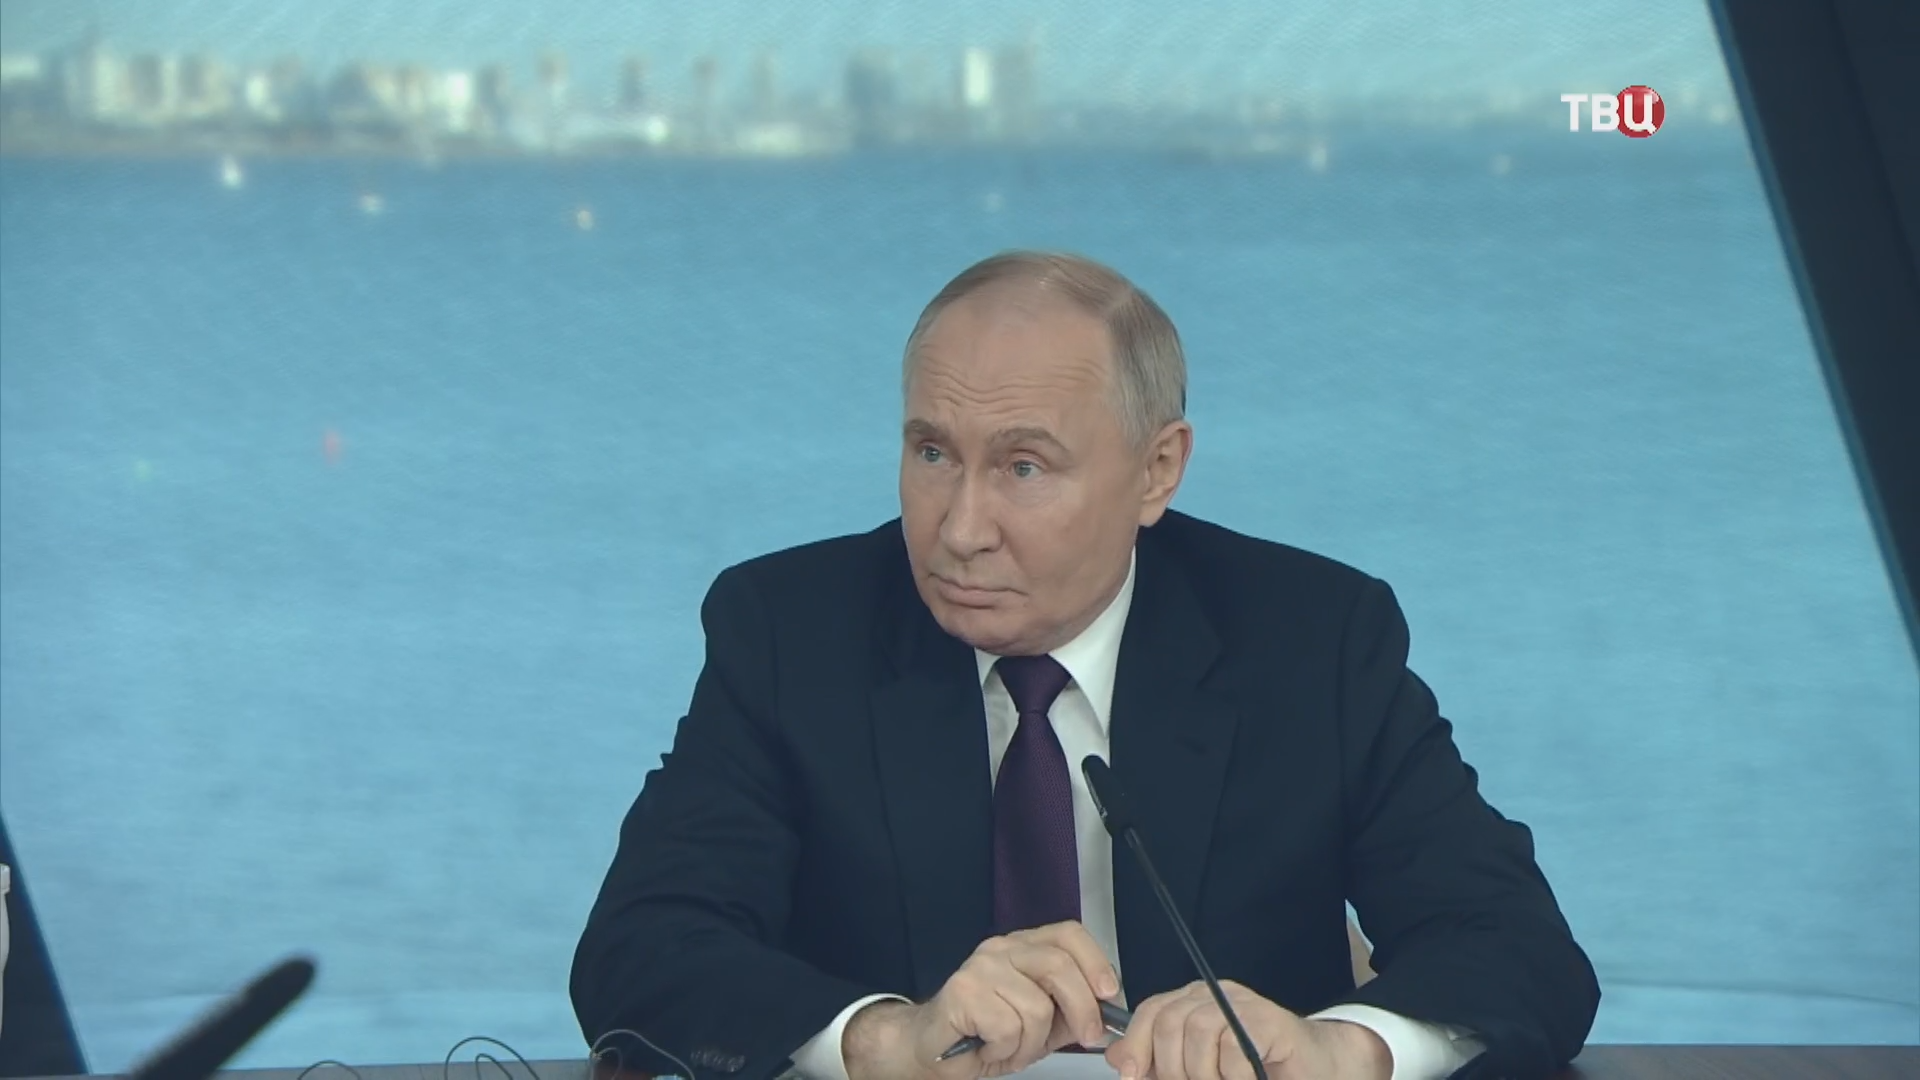 Путин: Байден предсказуем, он политик старой школы / События на ТВЦ